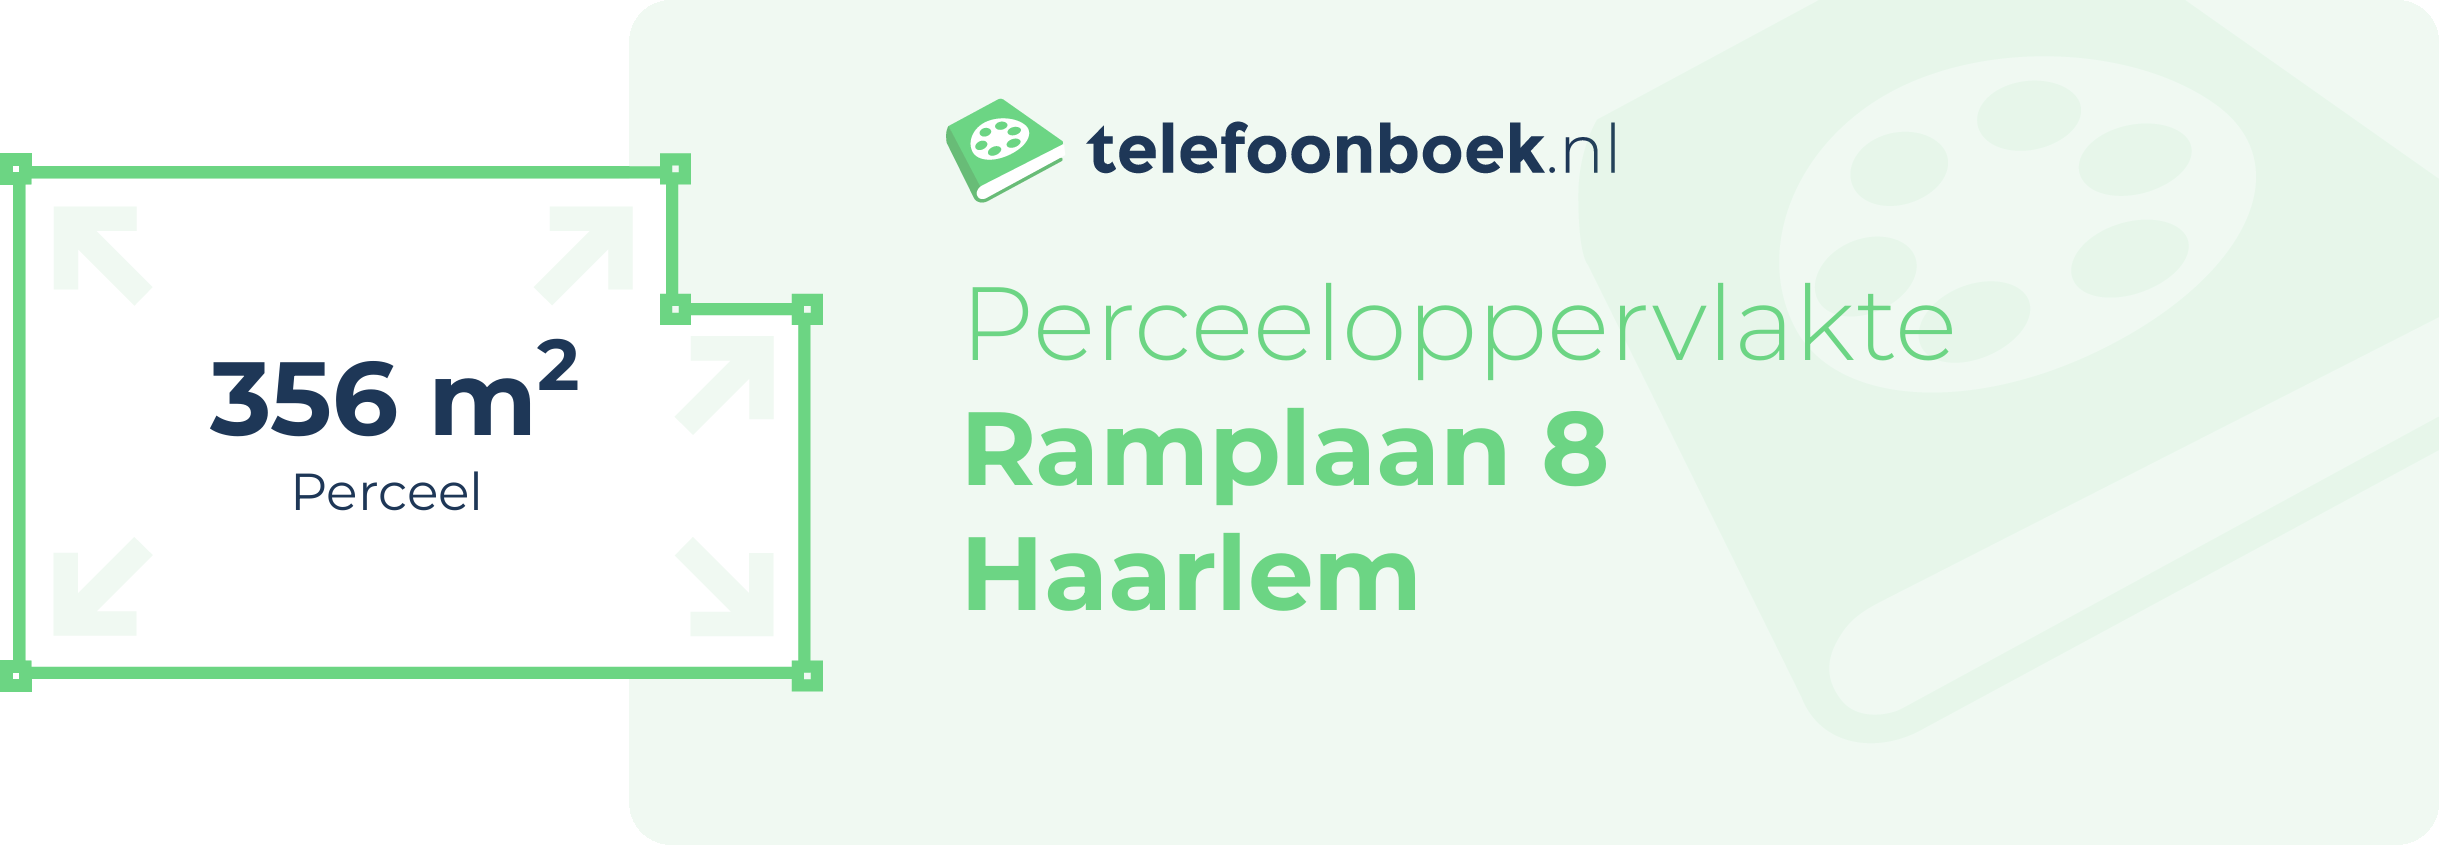 Perceeloppervlakte Ramplaan 8 Haarlem